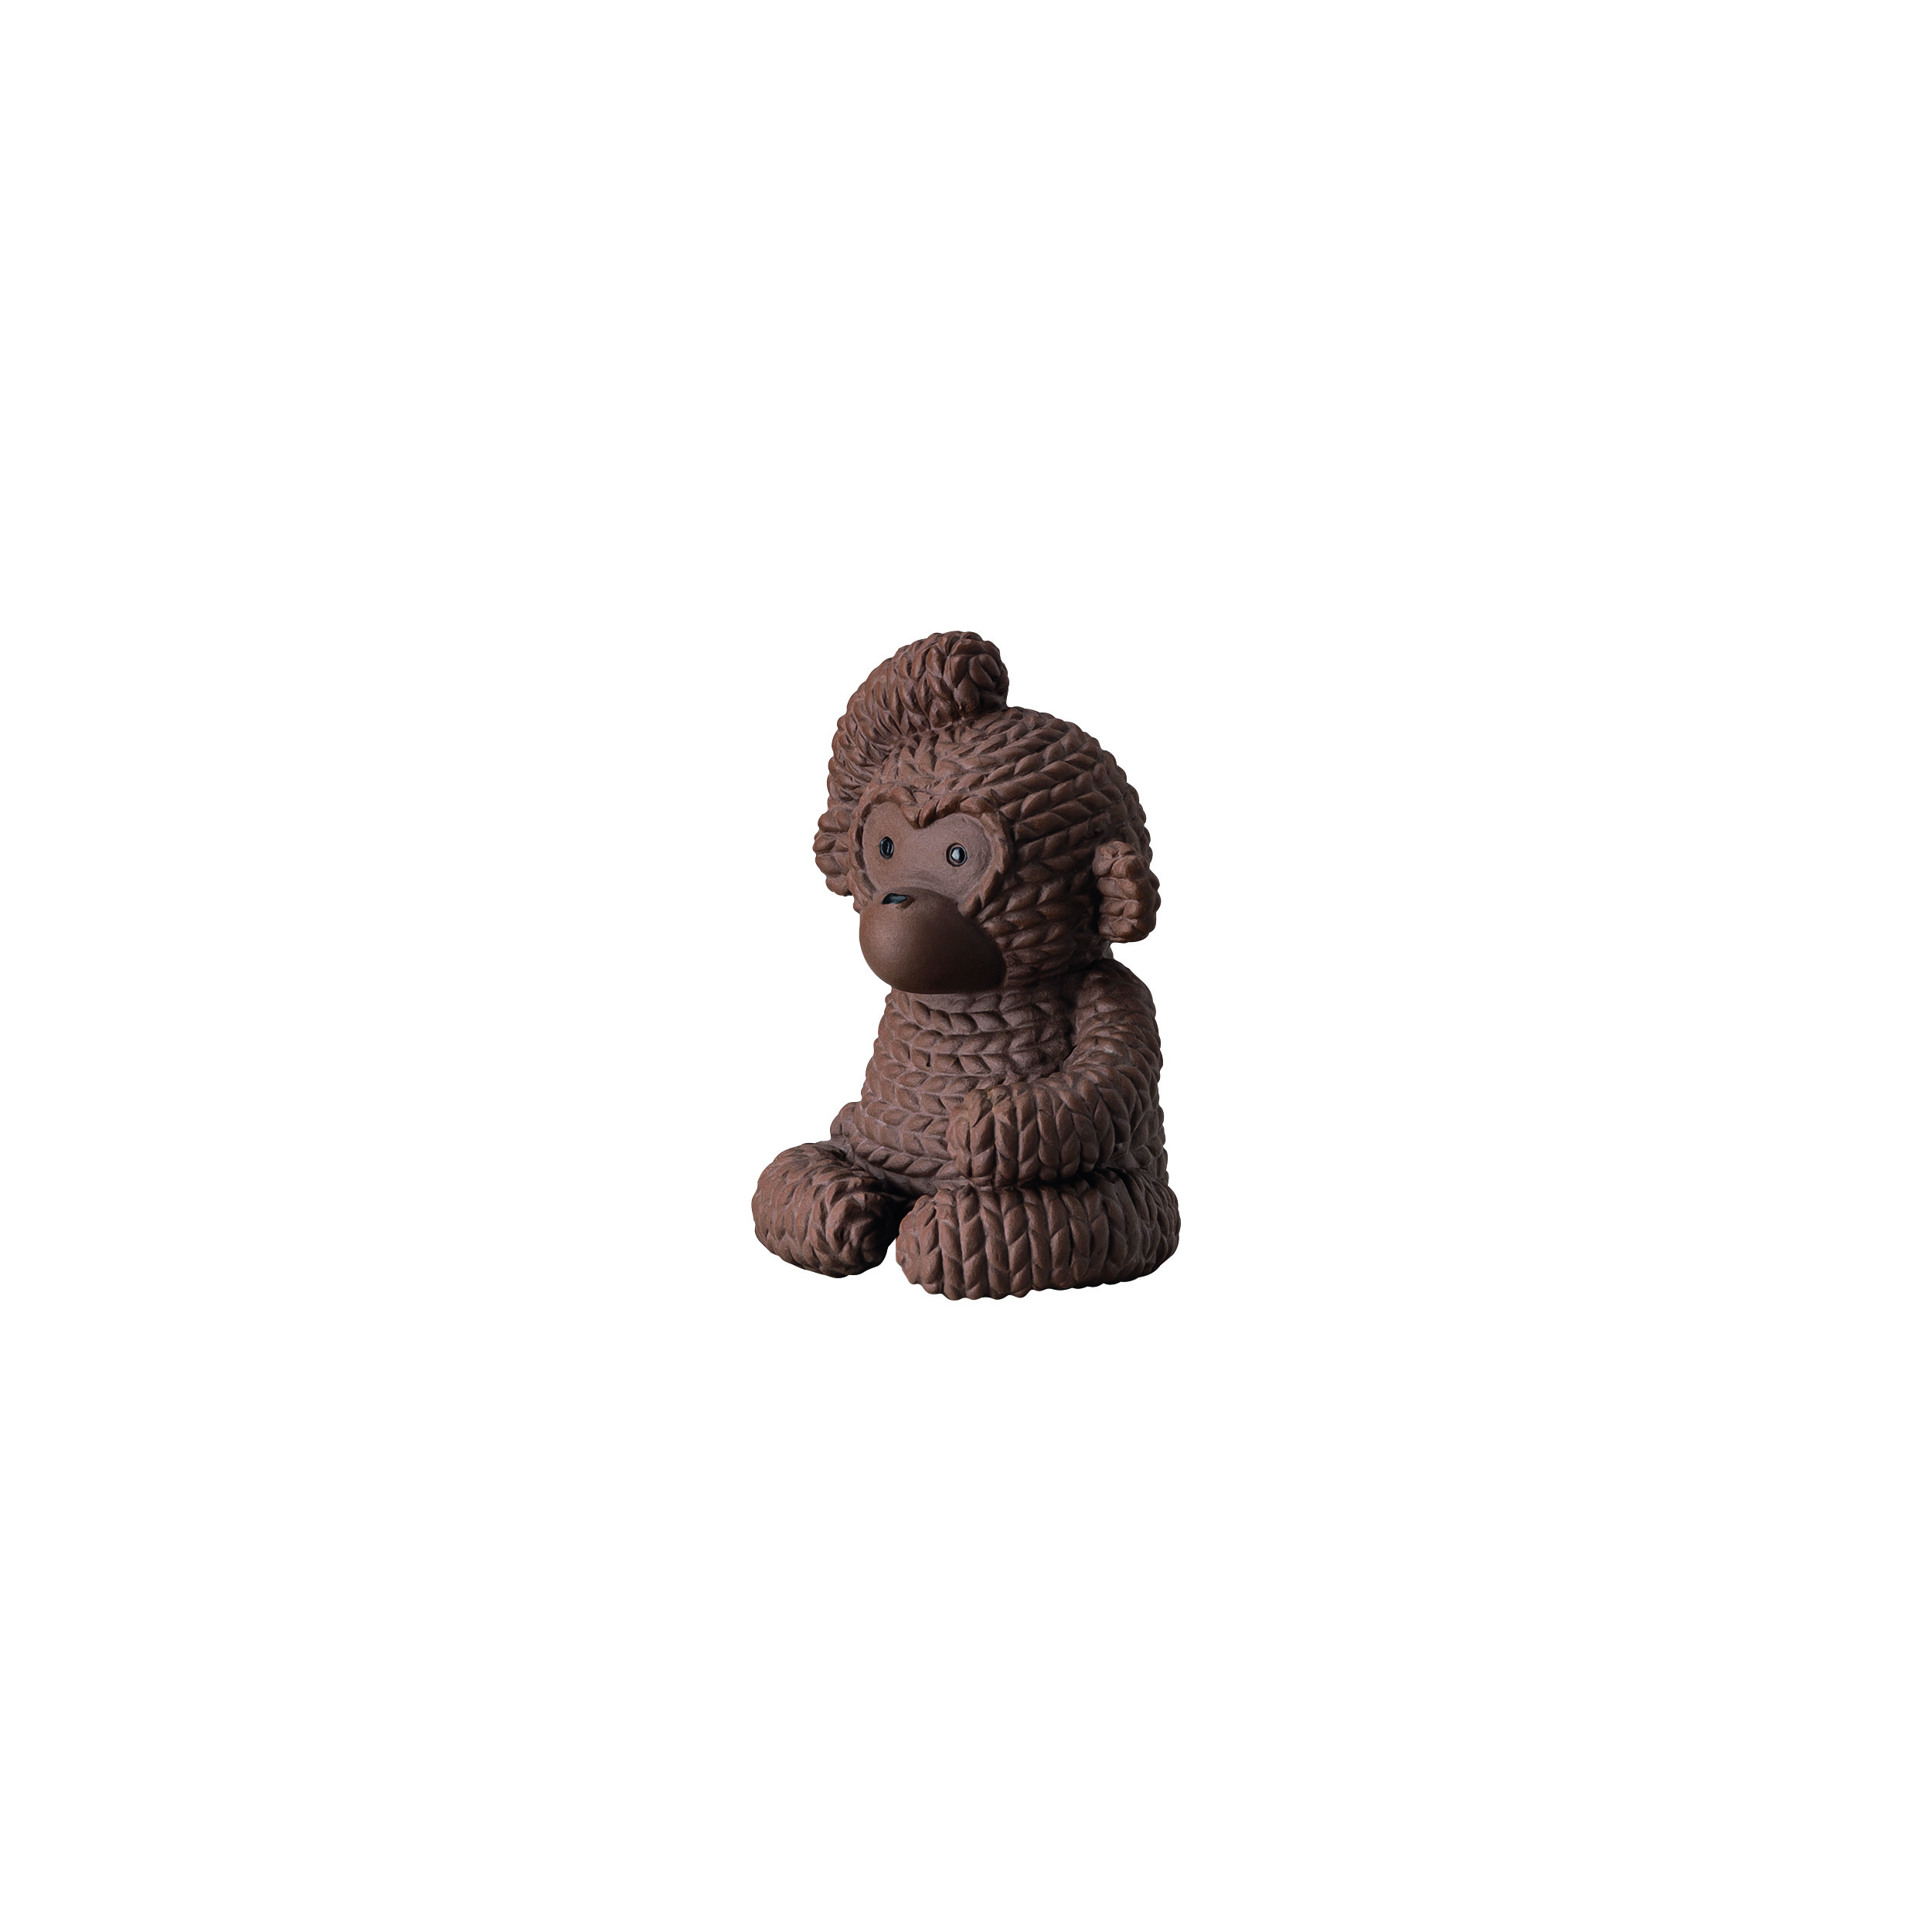 Pets - Monkey Gordon Macaroon Affe klein 6,5cm Porzellan